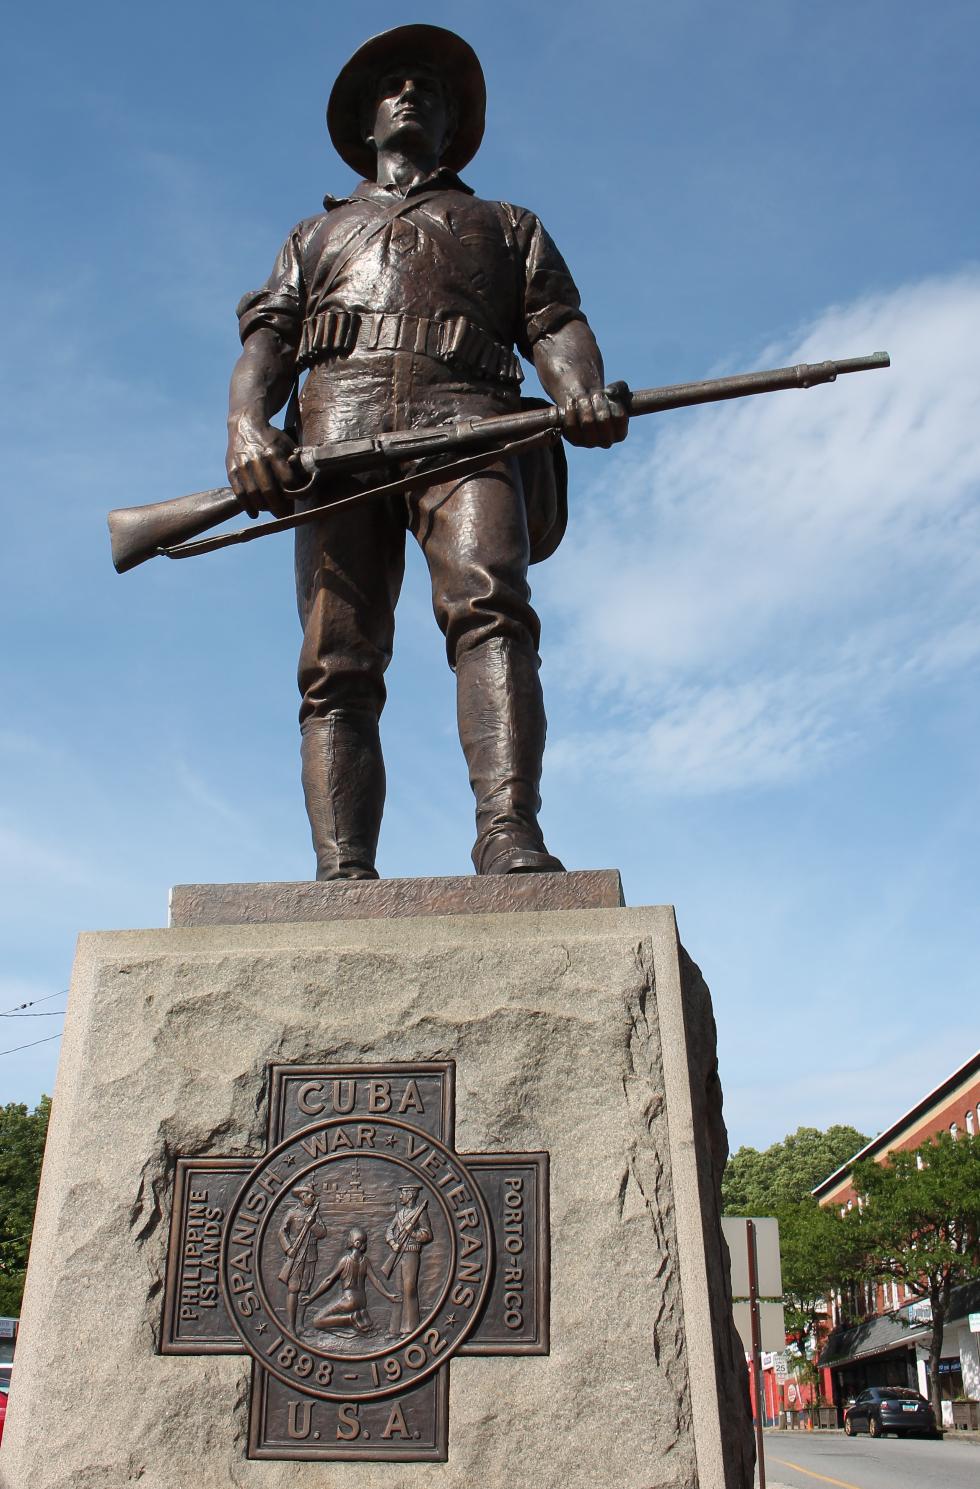 Fitchburg Massachusetts Spanish-American War Memorial